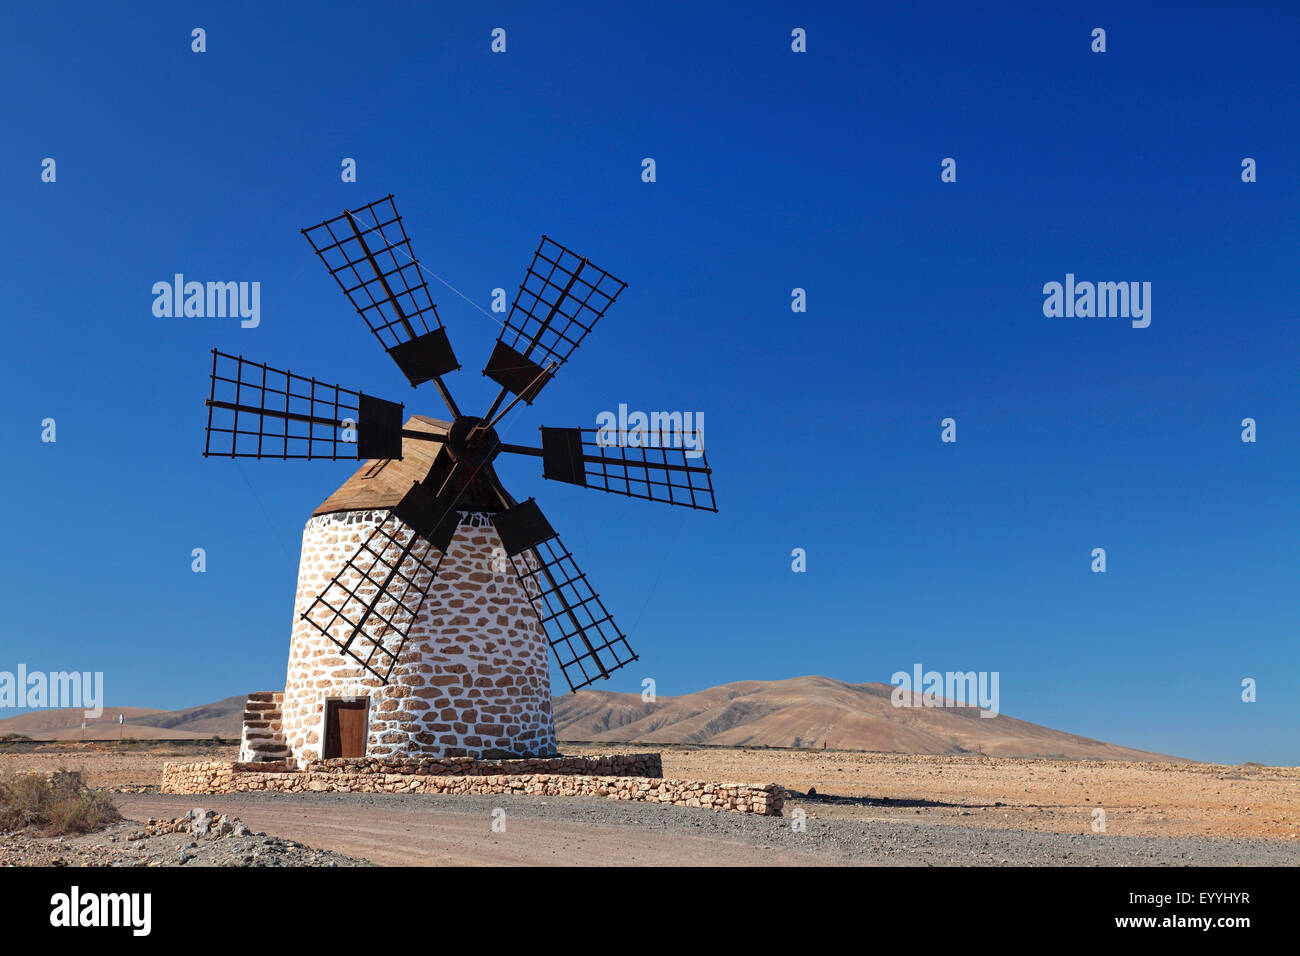 El molino de viento norte de Tefia, Fuerteventura, Islas Canarias Foto de stock